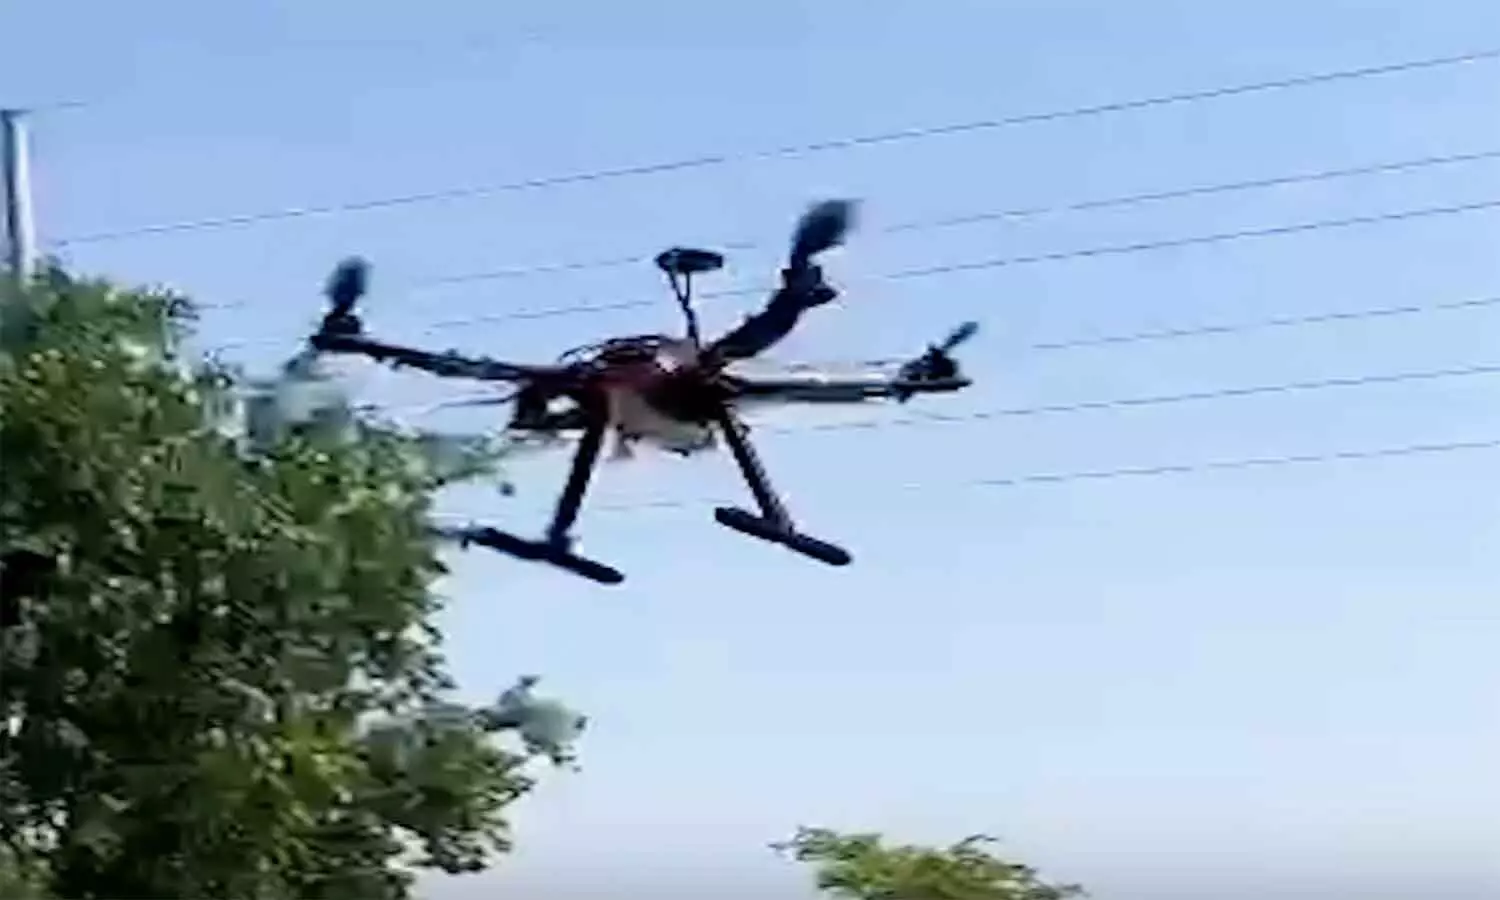 Garuda Drone: एमपी में इंदौर के स्टार्टअप ने तैयार किया मल्टी स्पेशलिटी ड्रोन ‘गरुड‘, इन खूबियों से है लैस